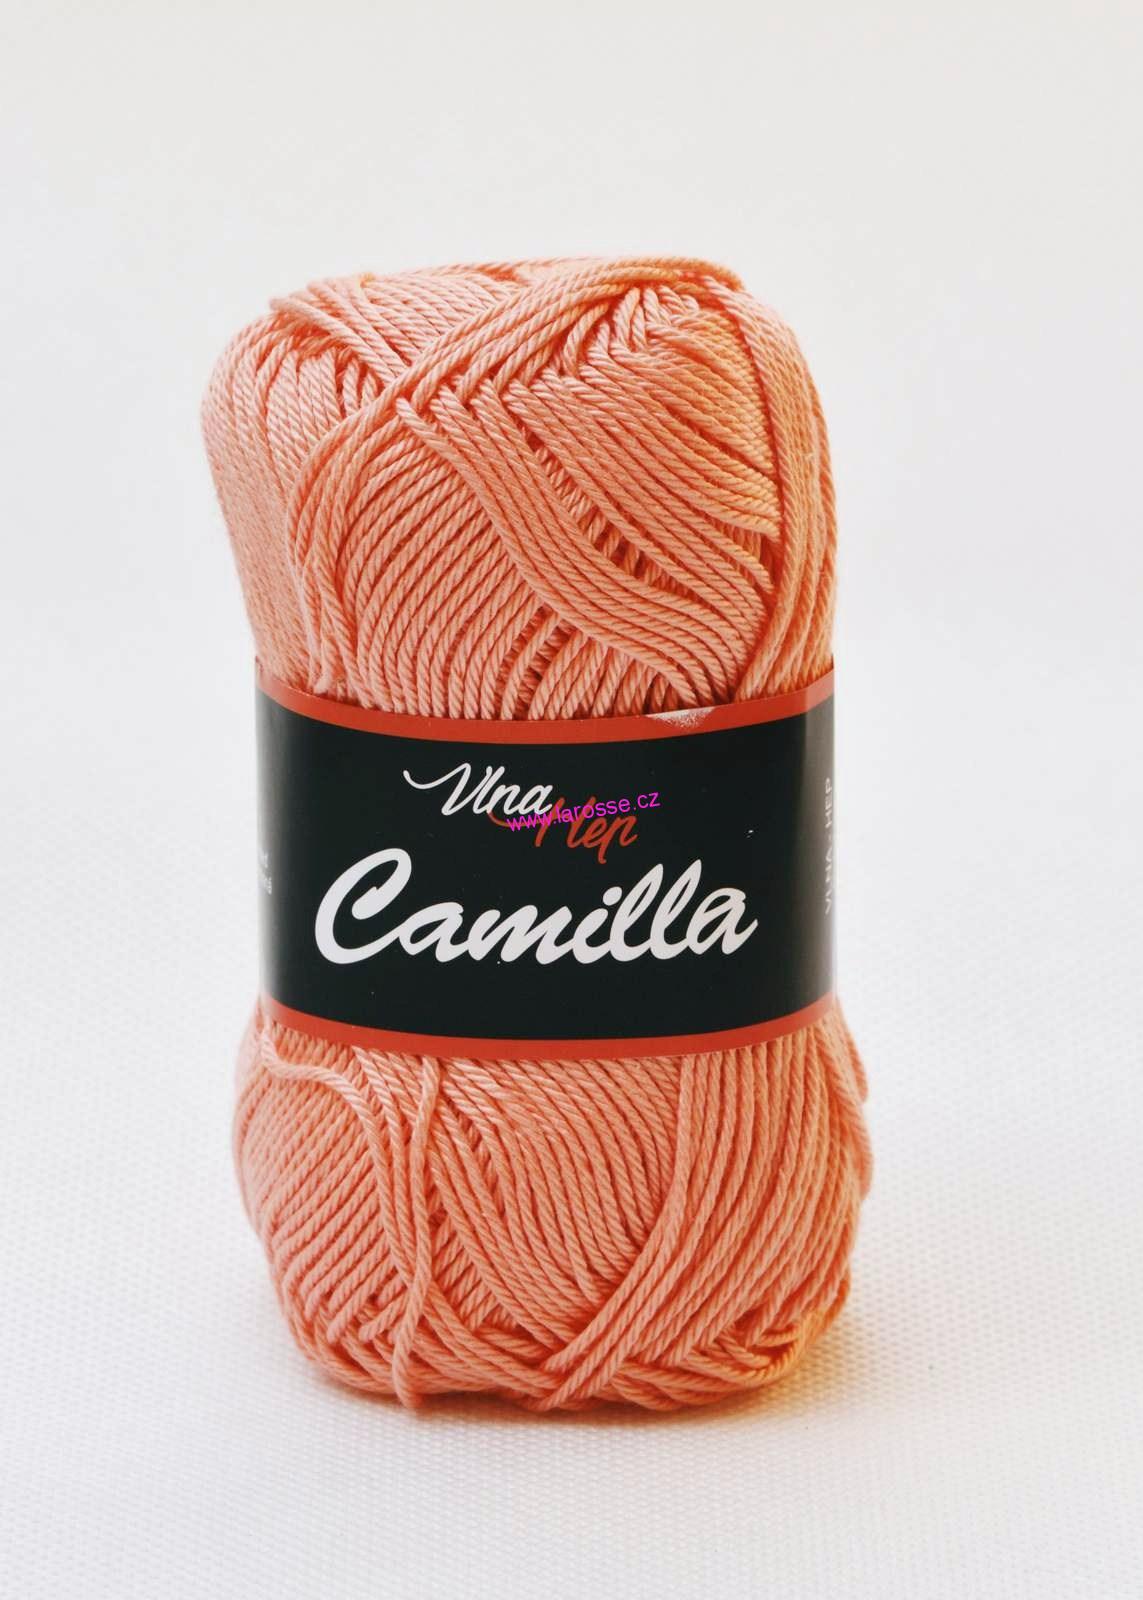 Camilla - VH - 8014 - lososová